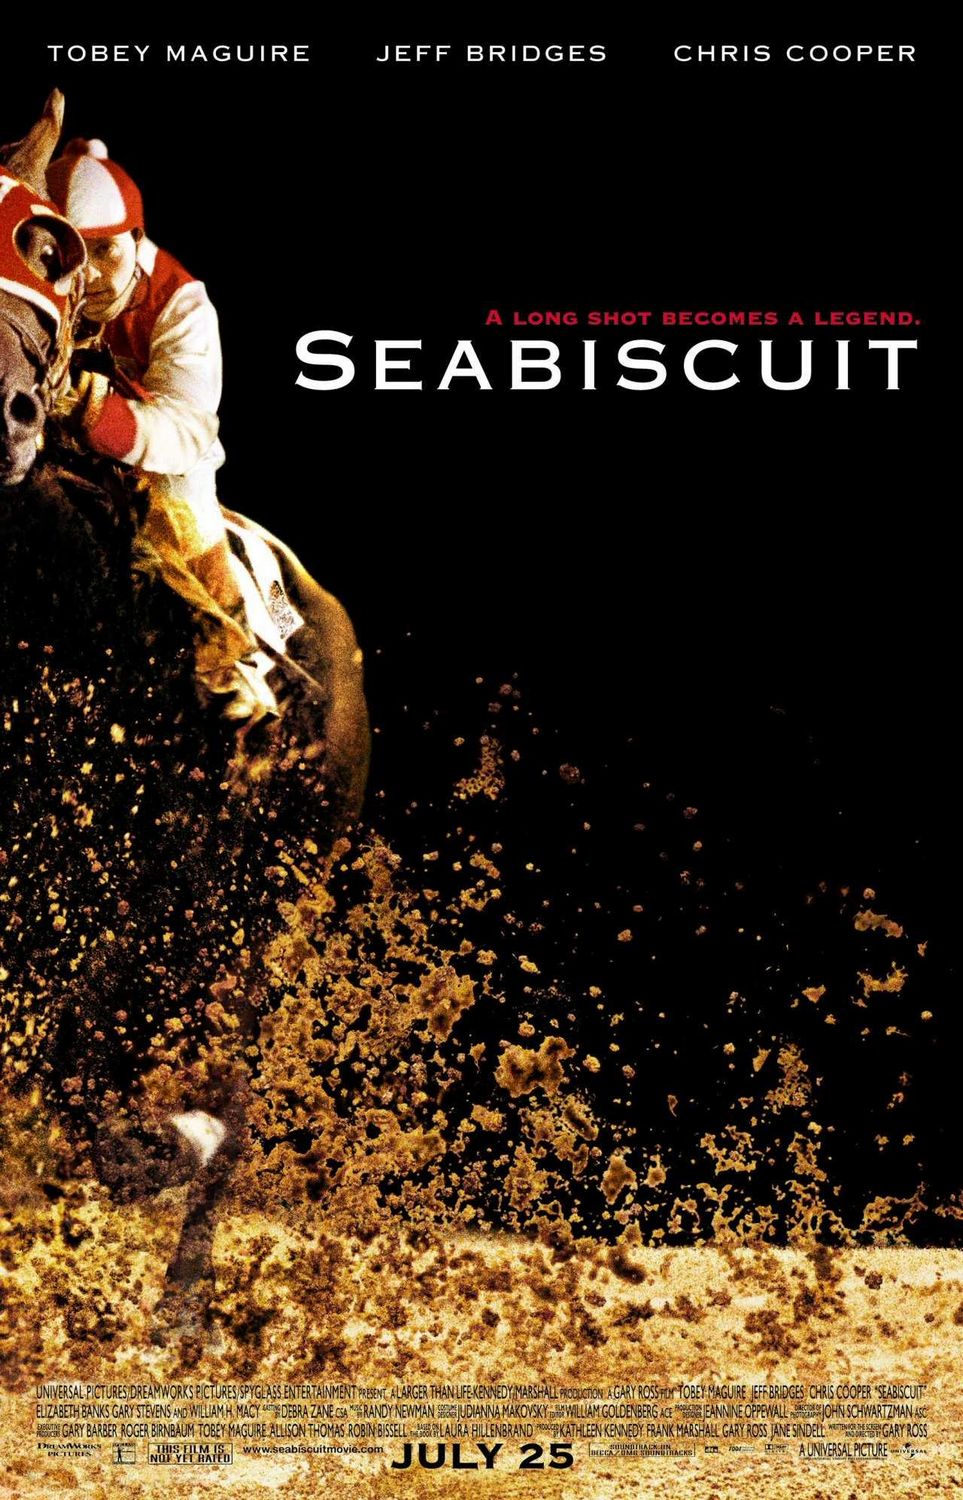 ดูหนังออนไลน์ฟรี Seabiscuit 2003 ม้าพิชิตโลก เว็บดูหนังใหม่ออนไลน์